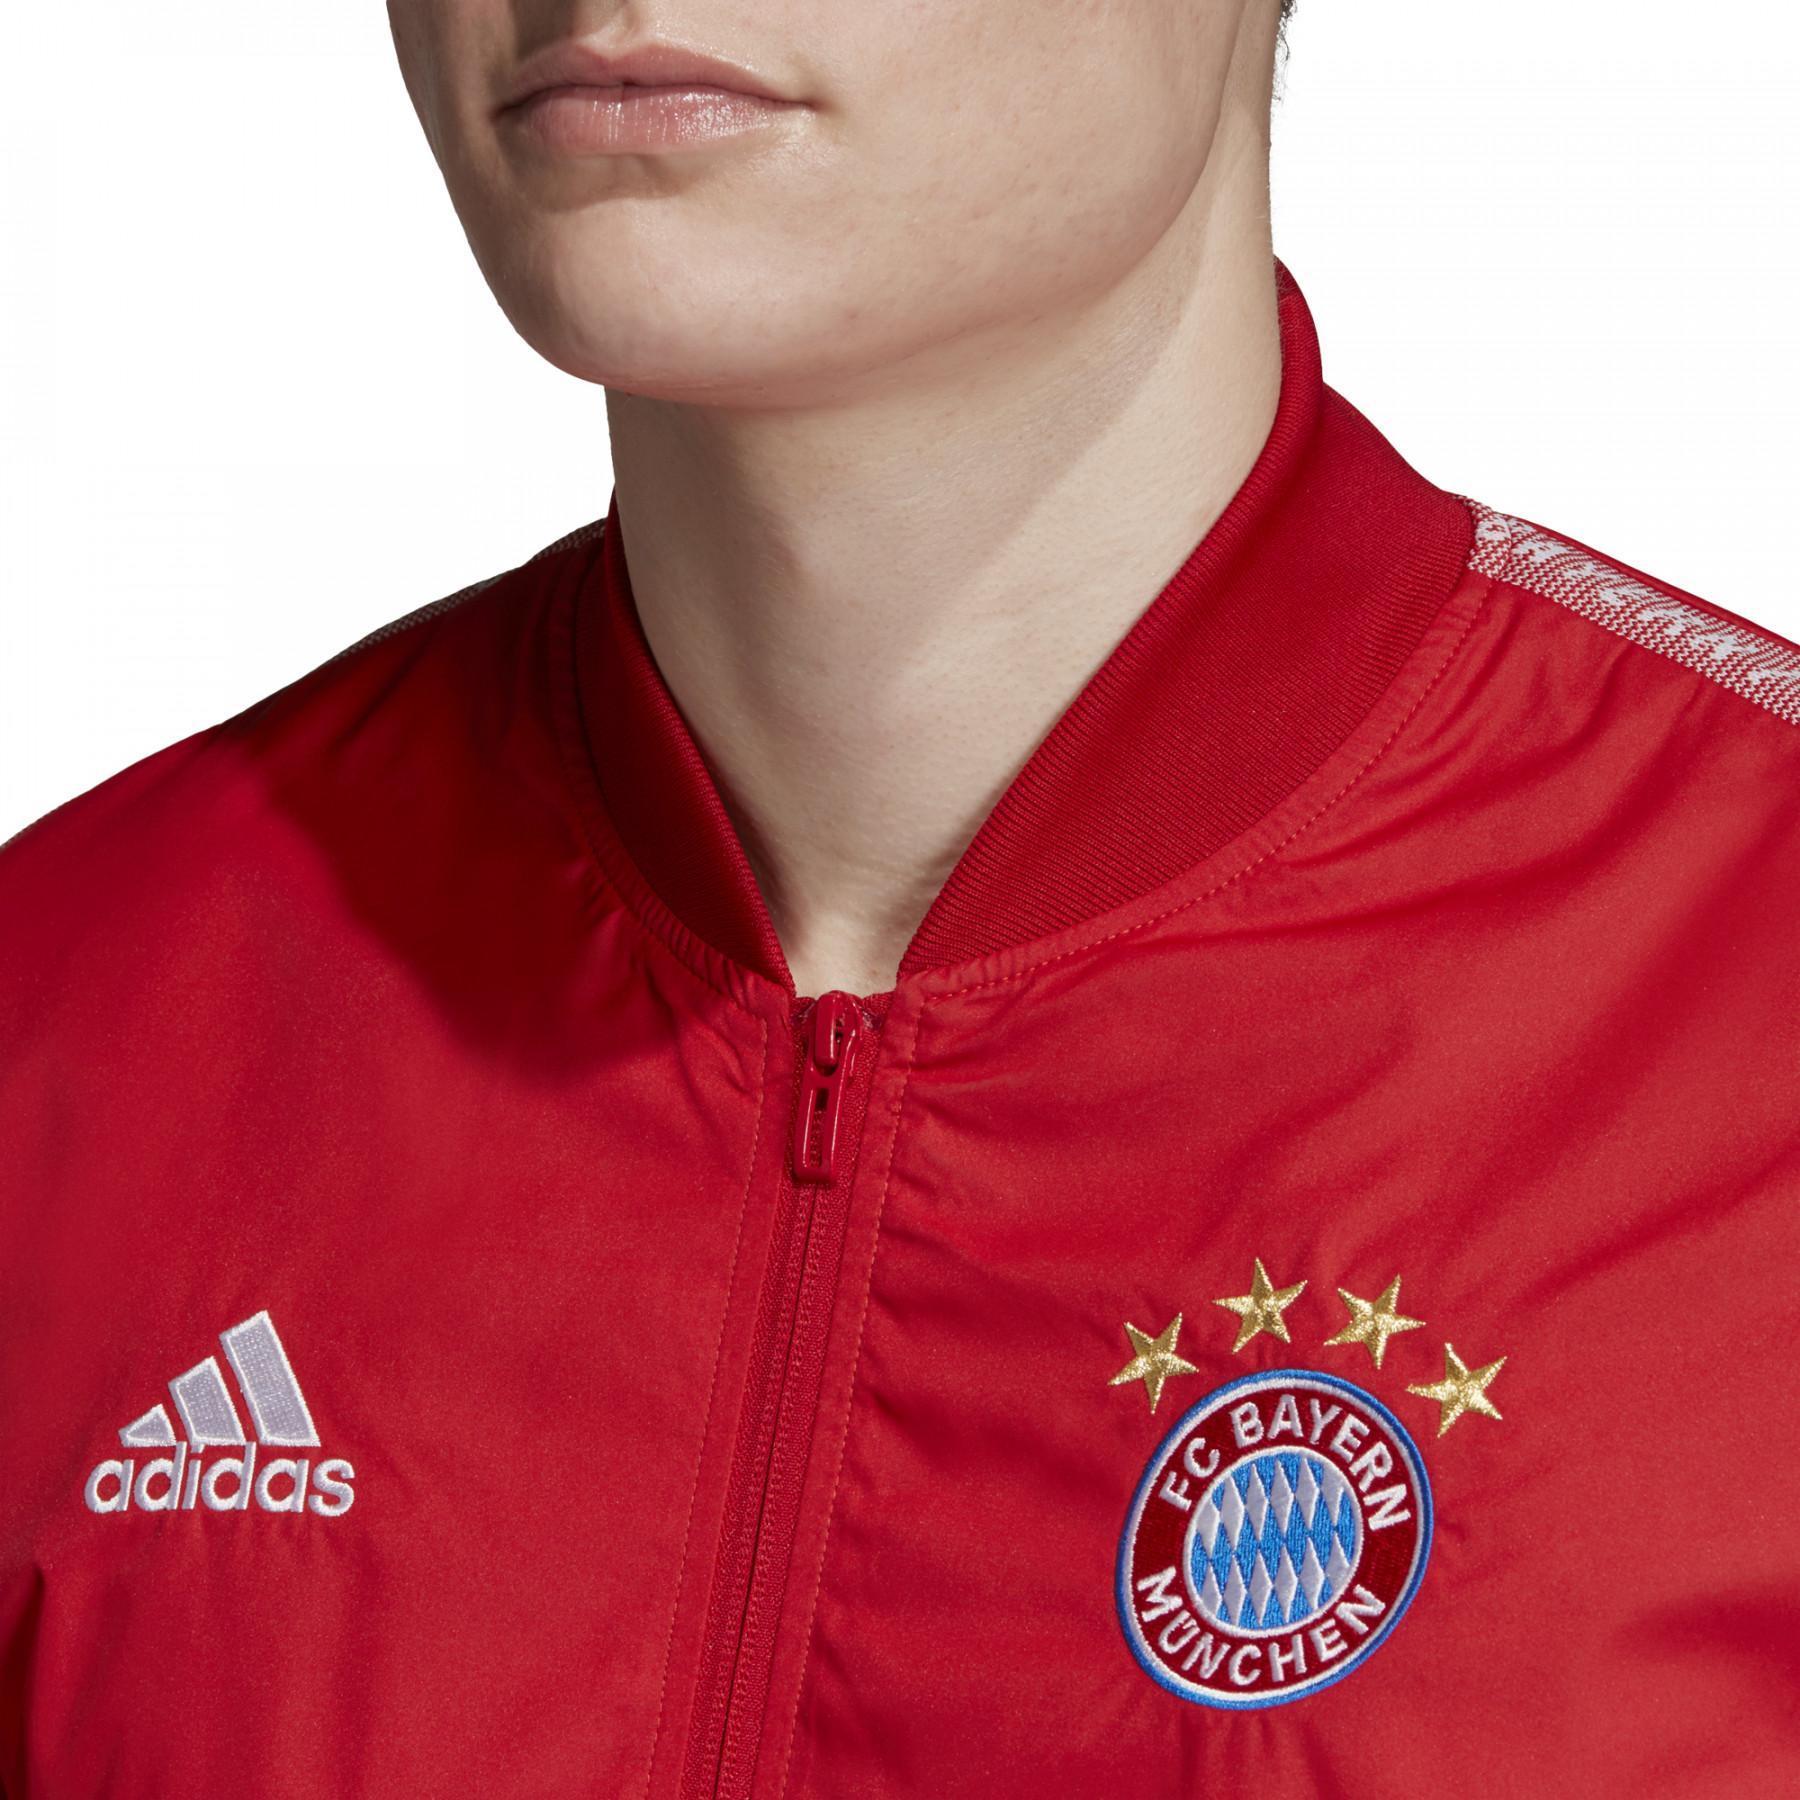 Sweat jacket Bayern Munich Anthem 2019/20